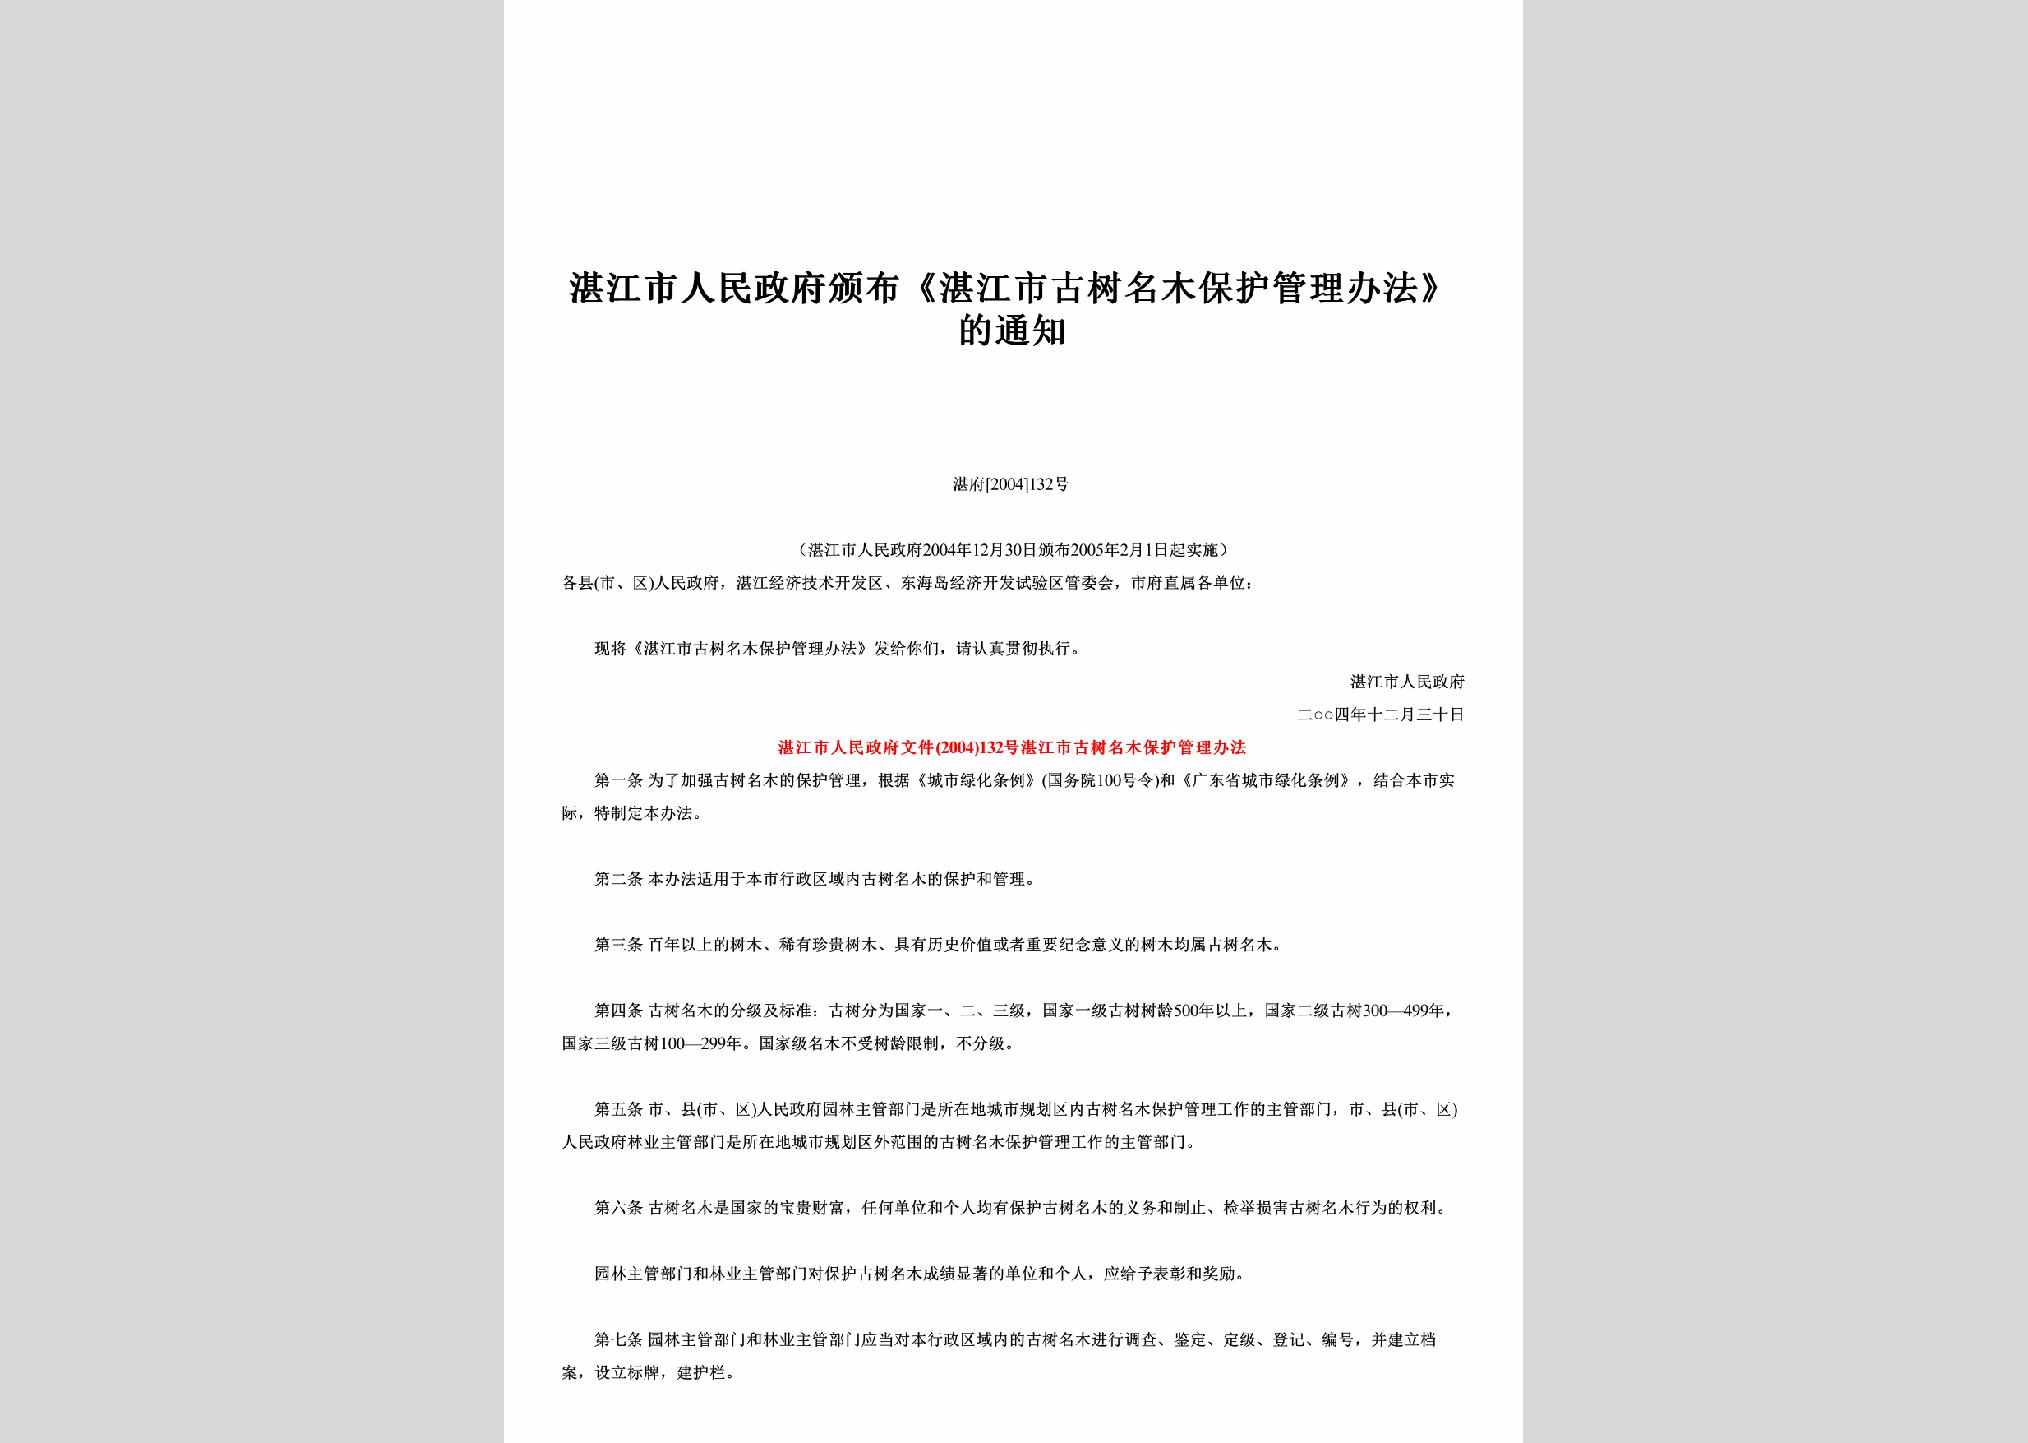 湛府[2004]132号：颁布《湛江市古树名木保护管理办法》的通知